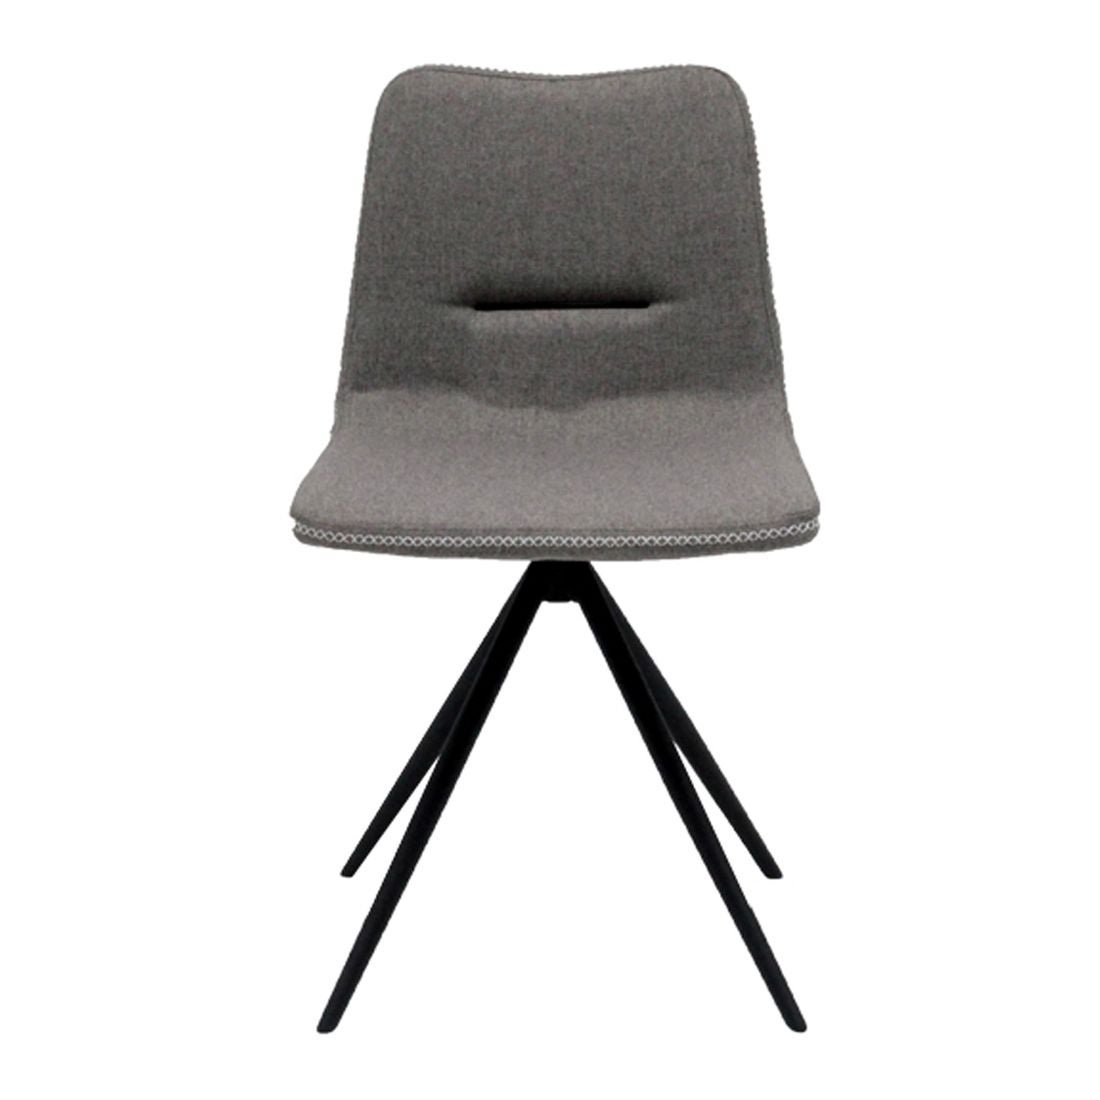 เก้าอี้ทานอาหาร เก้าอี้เหล็กเบาะผ้า รุ่น Thana-SB Design Square